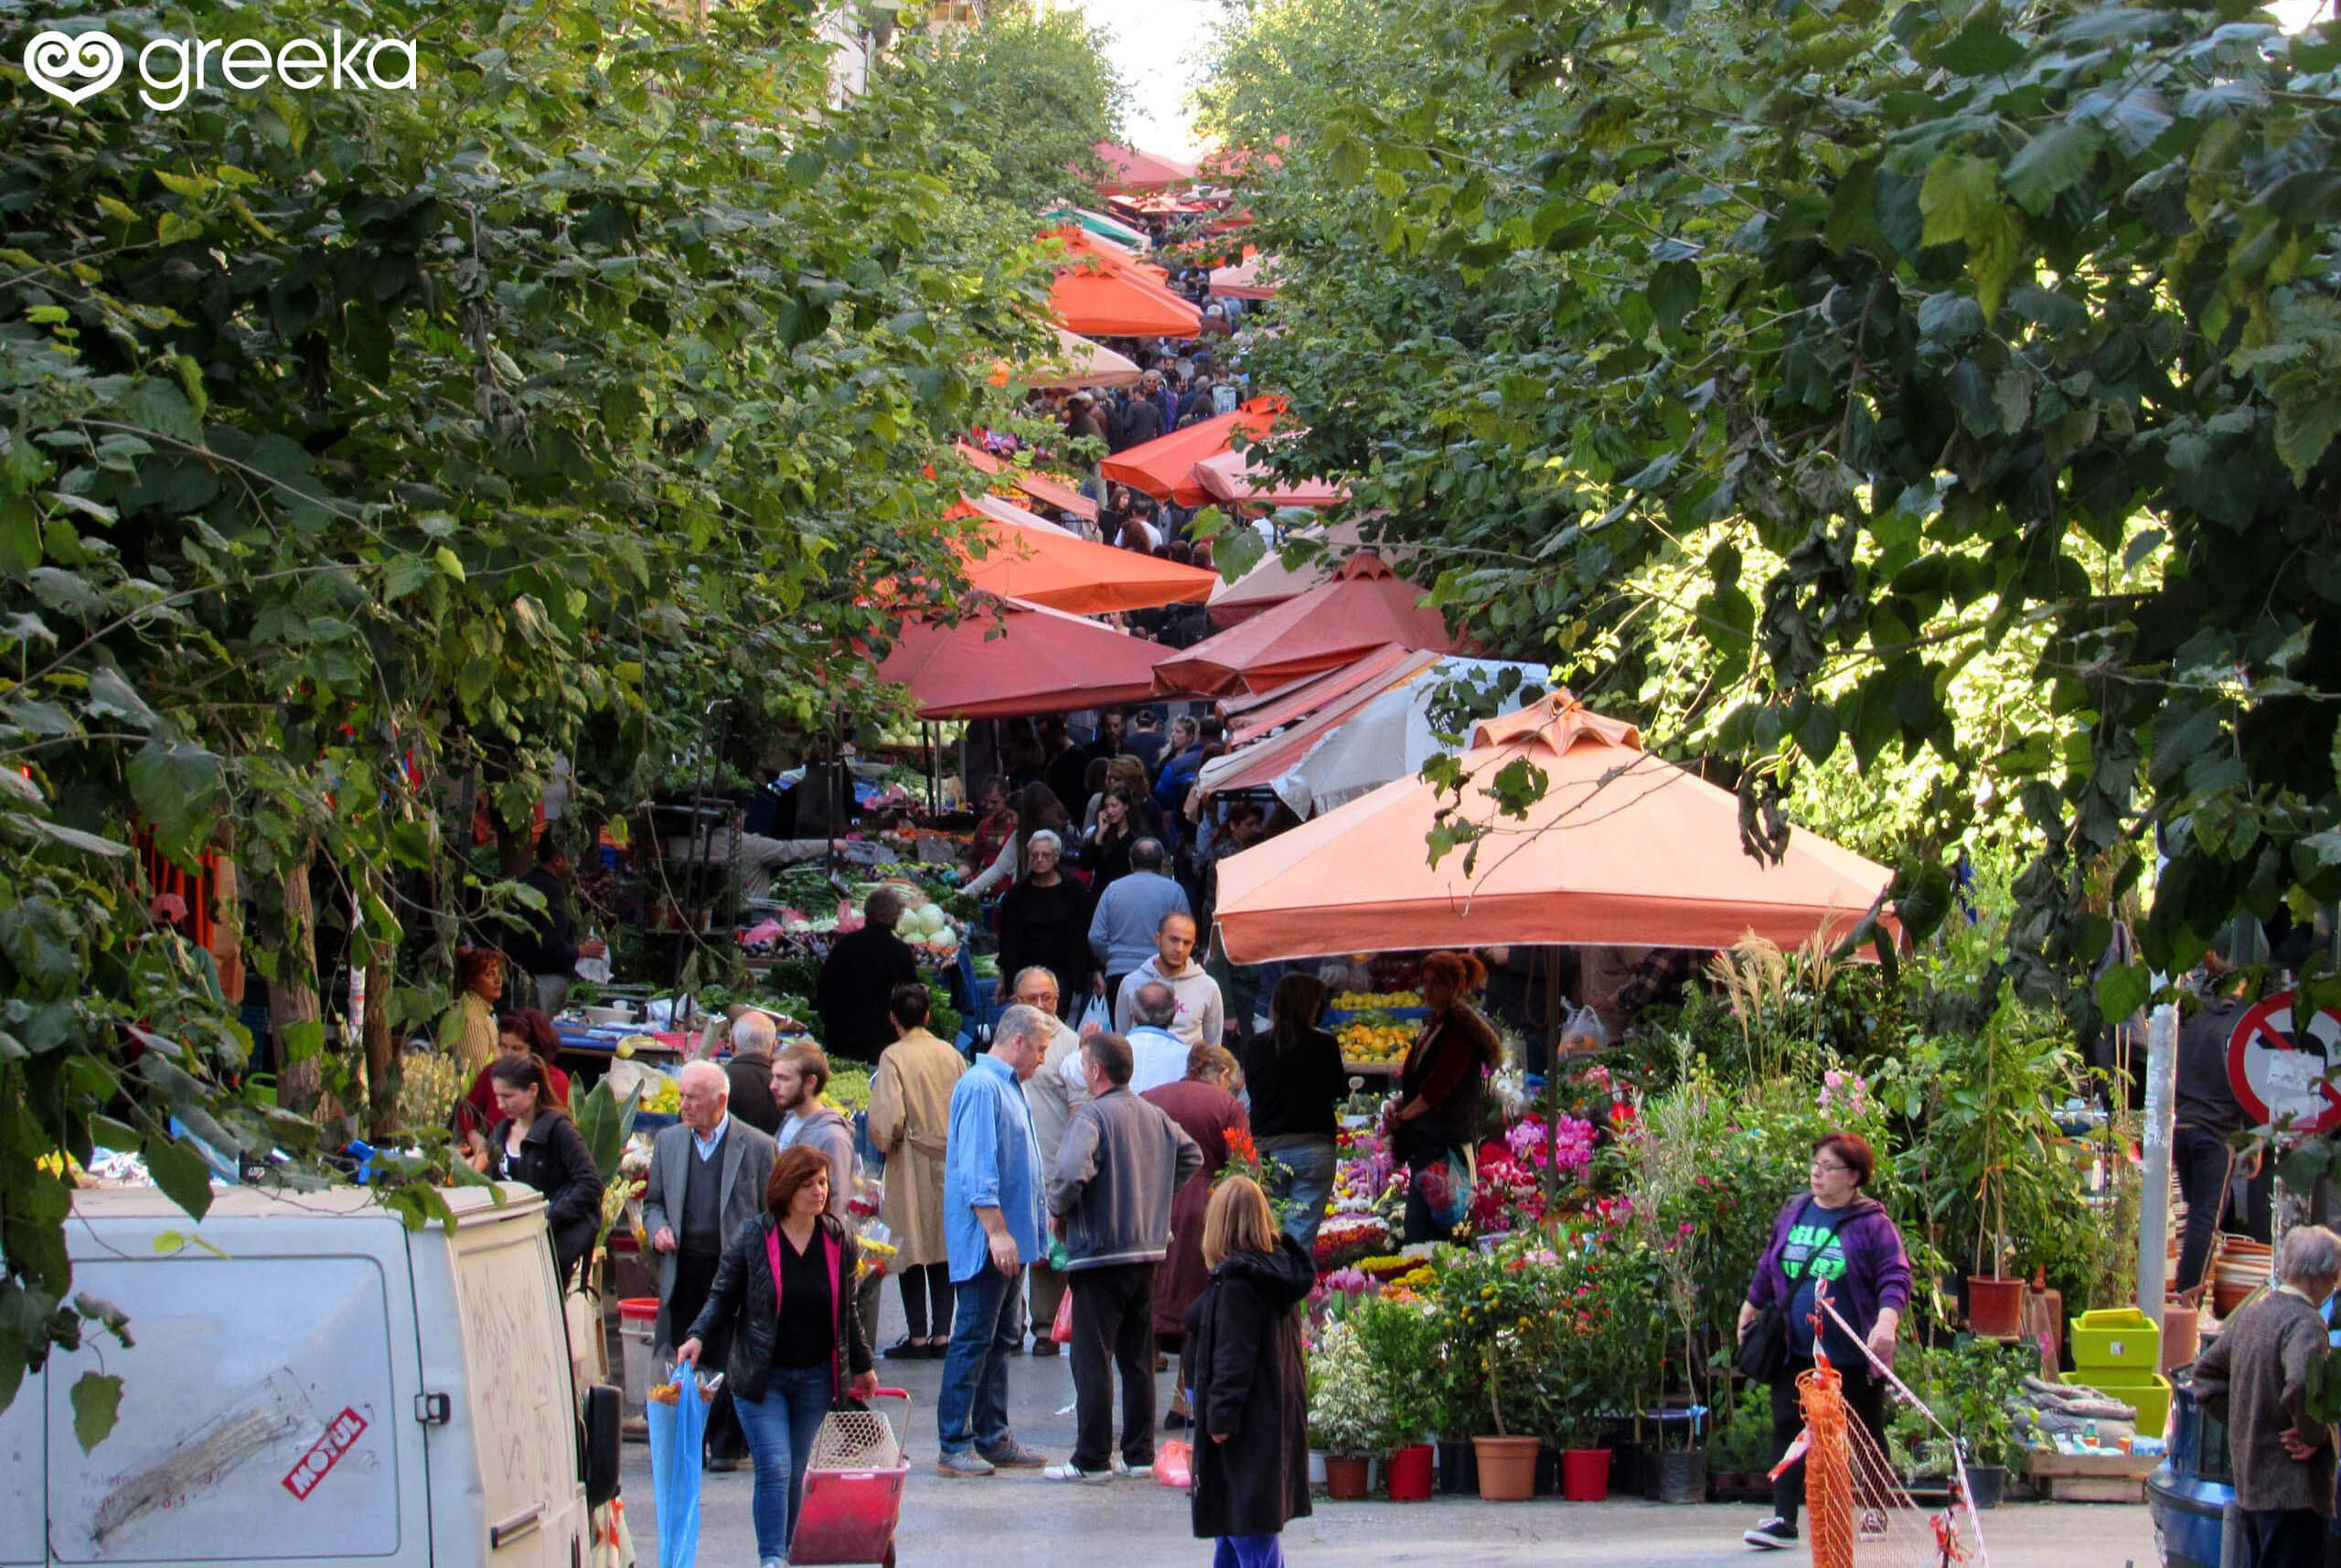 Laiki Agora (Farmer's market) in Athens, Greece Greeka